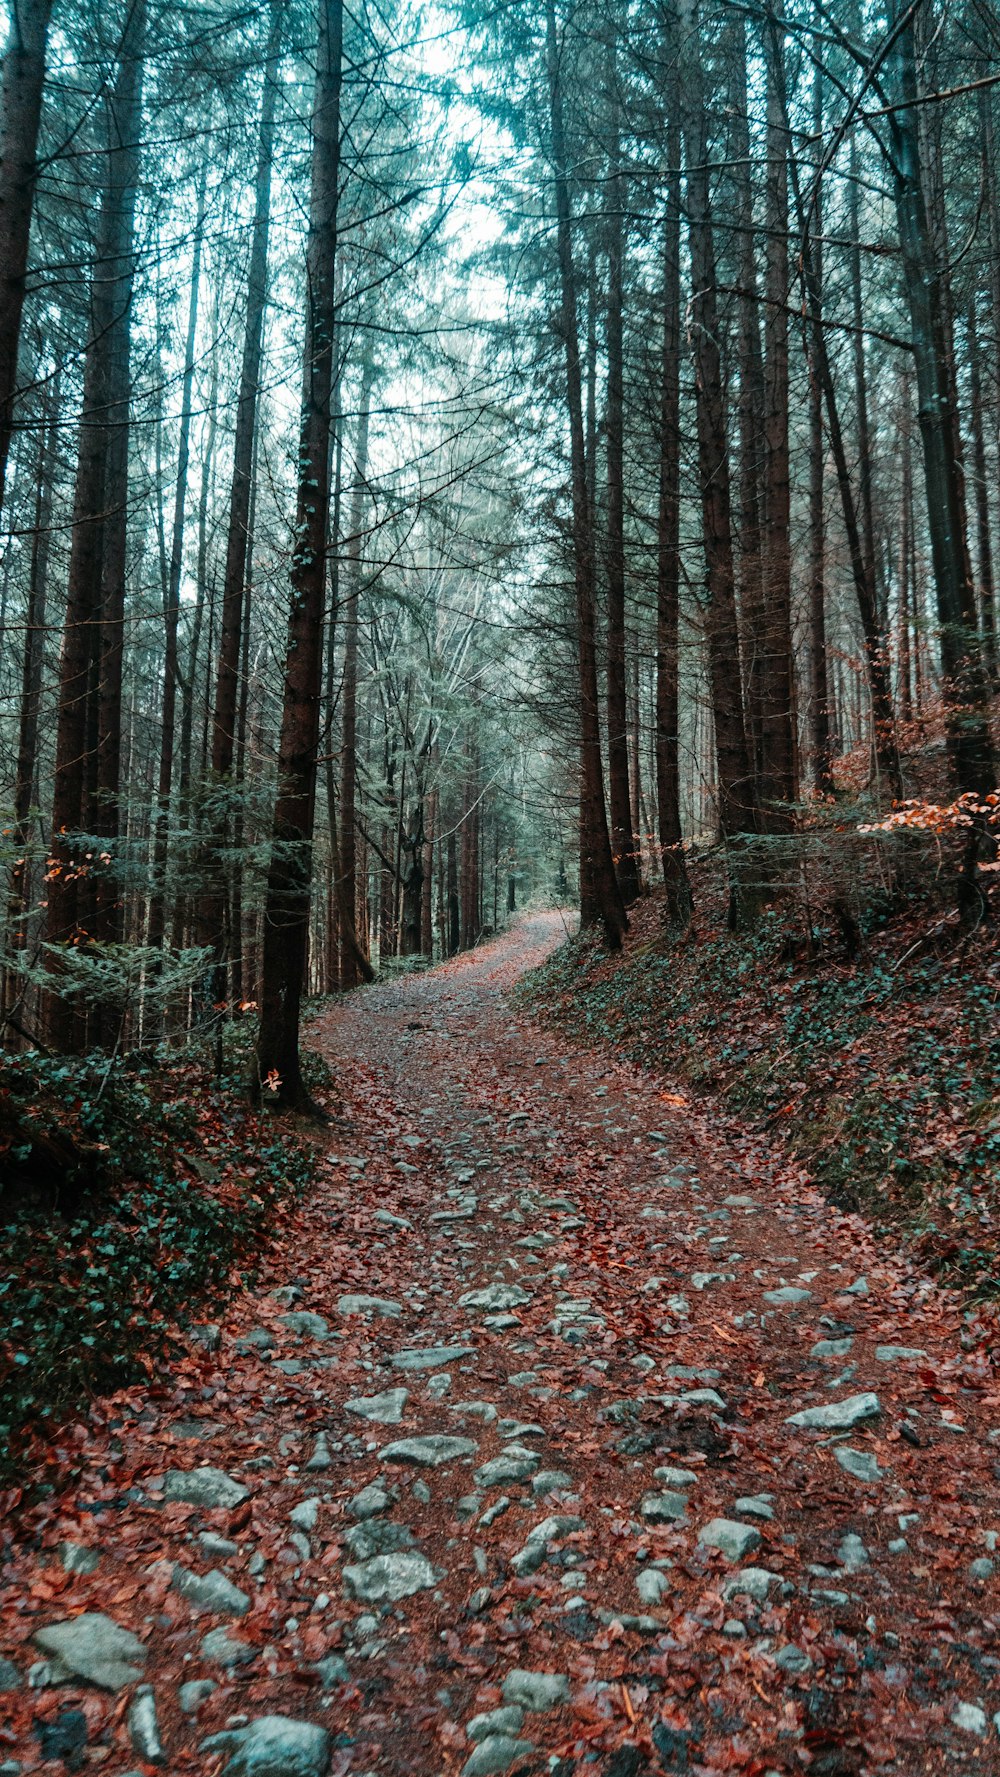 camino cubierto de hojas otoñales rodeado de árboles